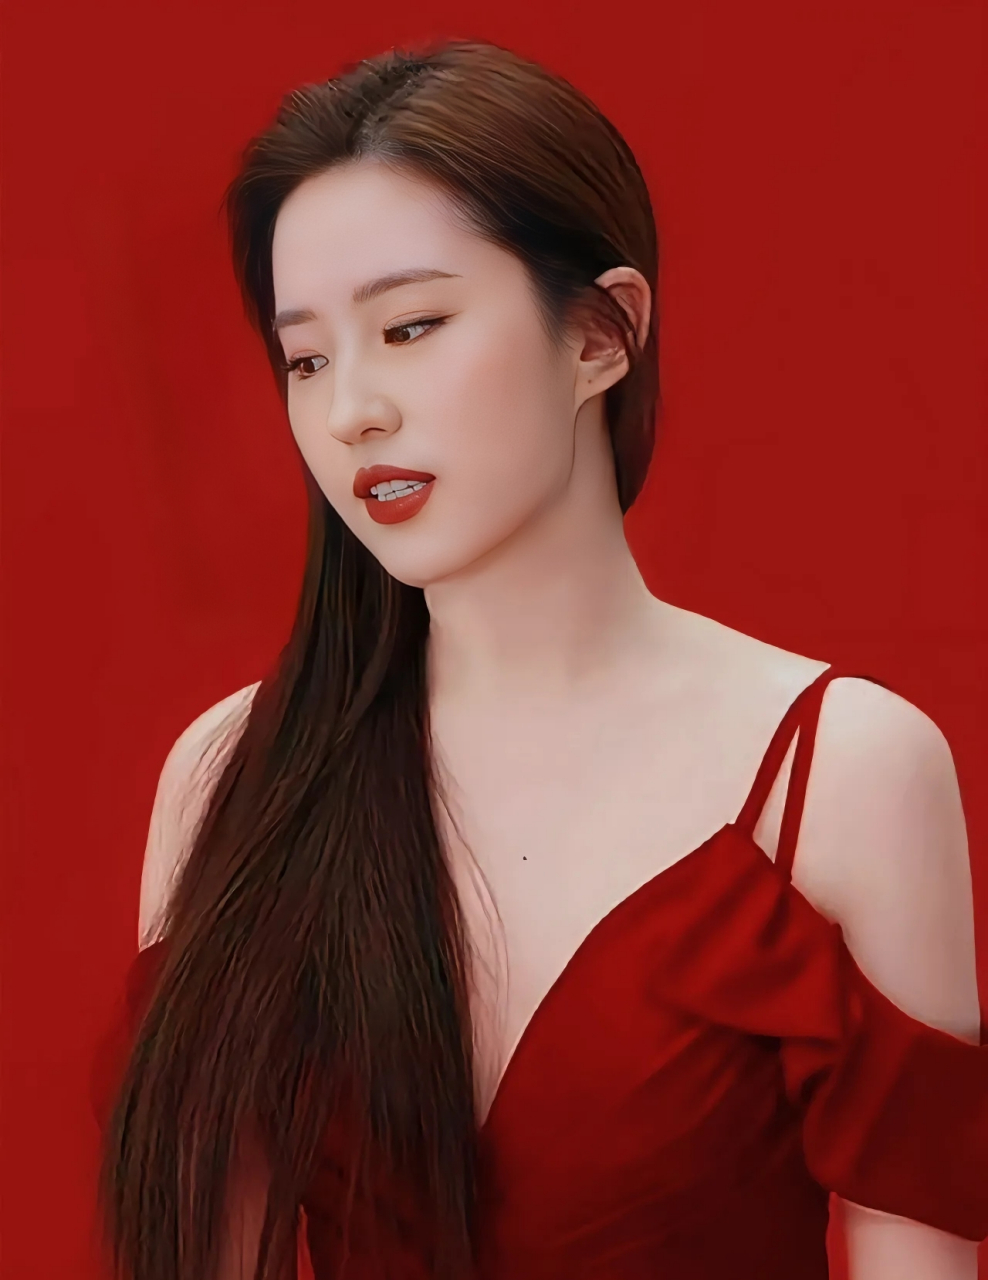 刘亦菲很适合穿红色的礼服,美艳又大气